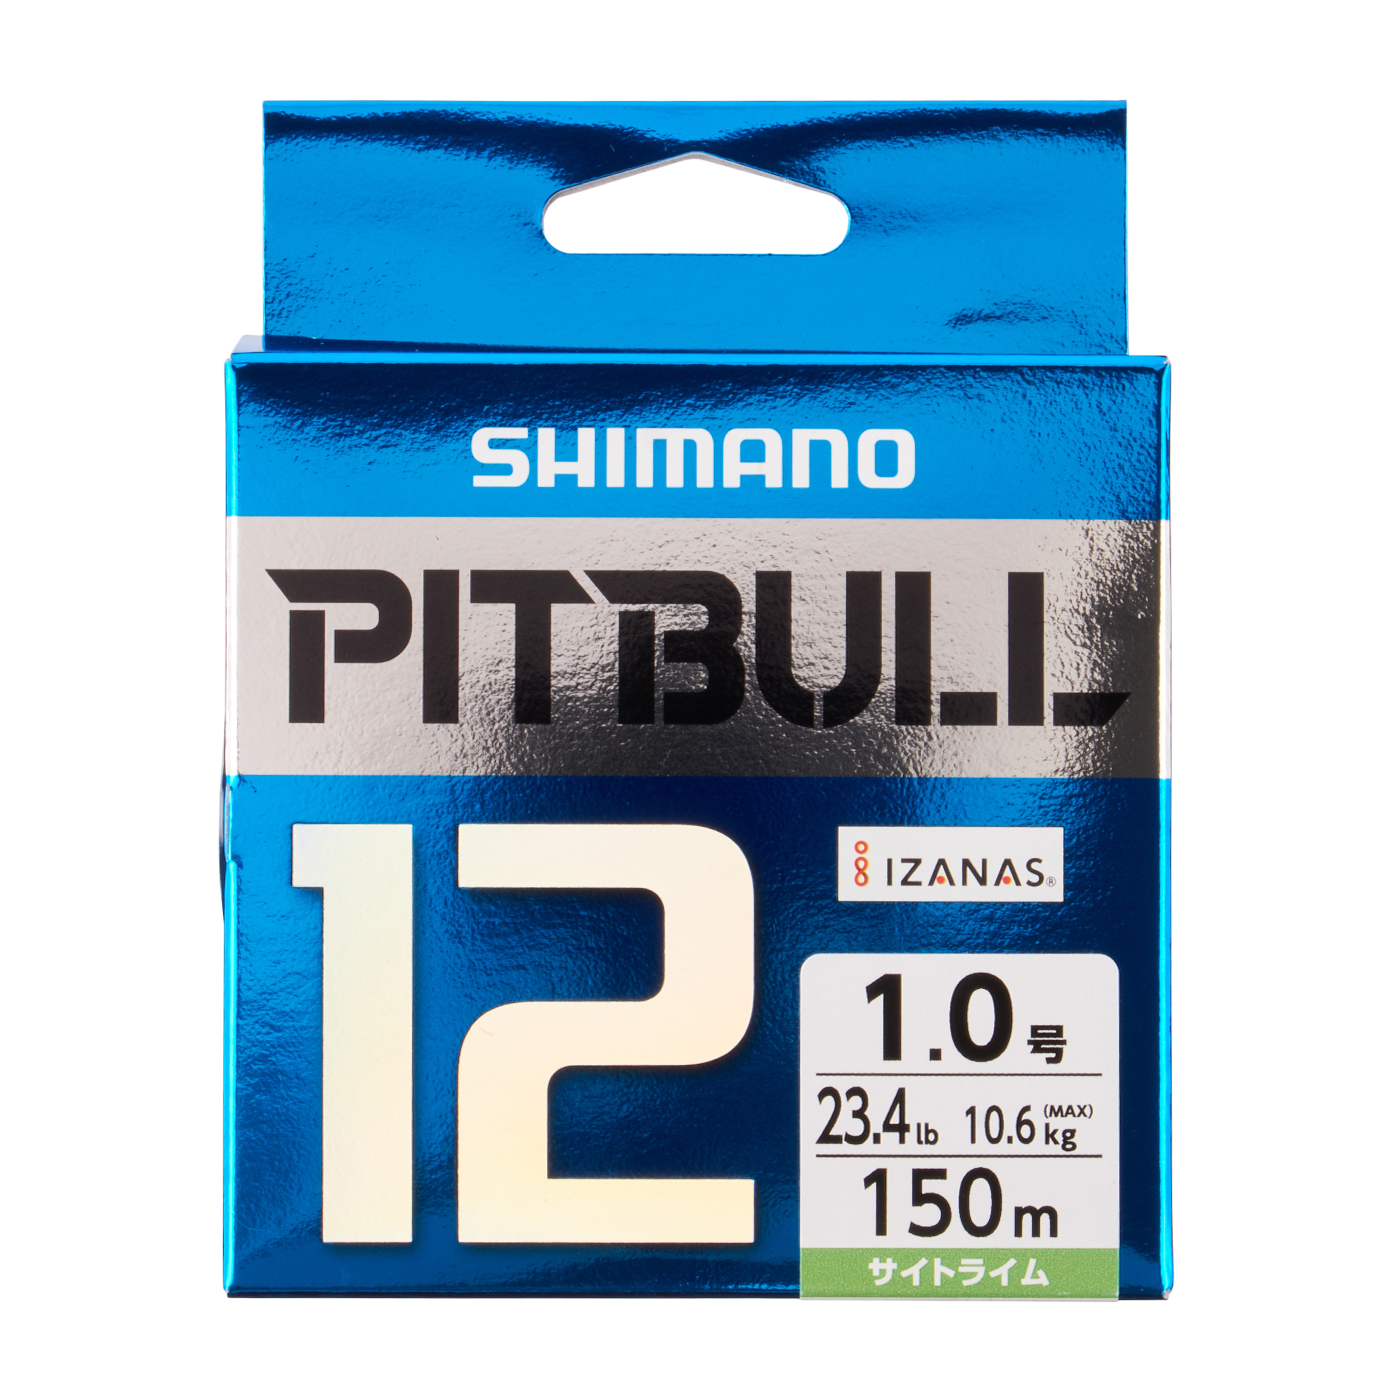 SHIMANO シマノpitbull 12 PEライン 2.0号 セット S1 - 釣り糸